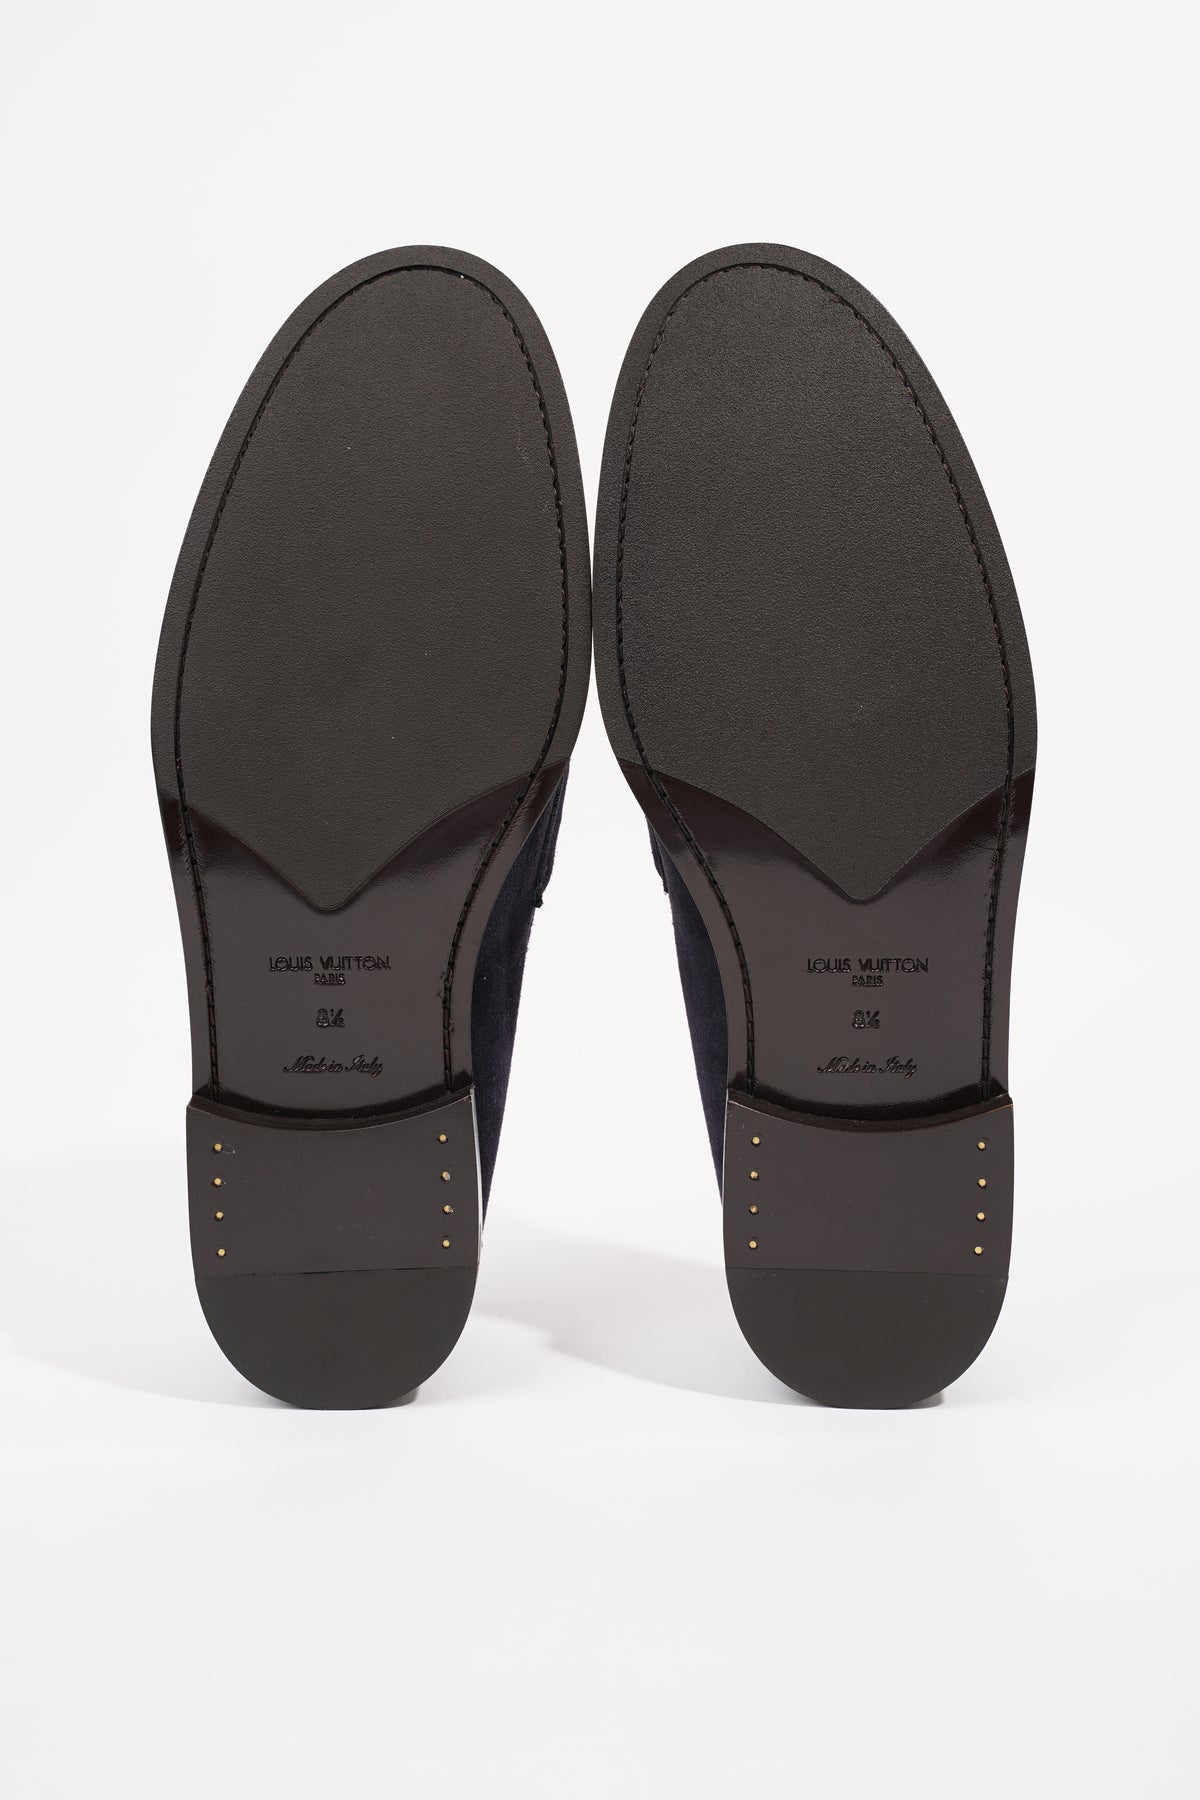 Louis Vuitton Men's Brown Suede Saint Germain Loafer Shoes size 8.5 US/ 7.5  LV Louis Vuitton Цвет: Коричневый; Размер: 8.5 купит